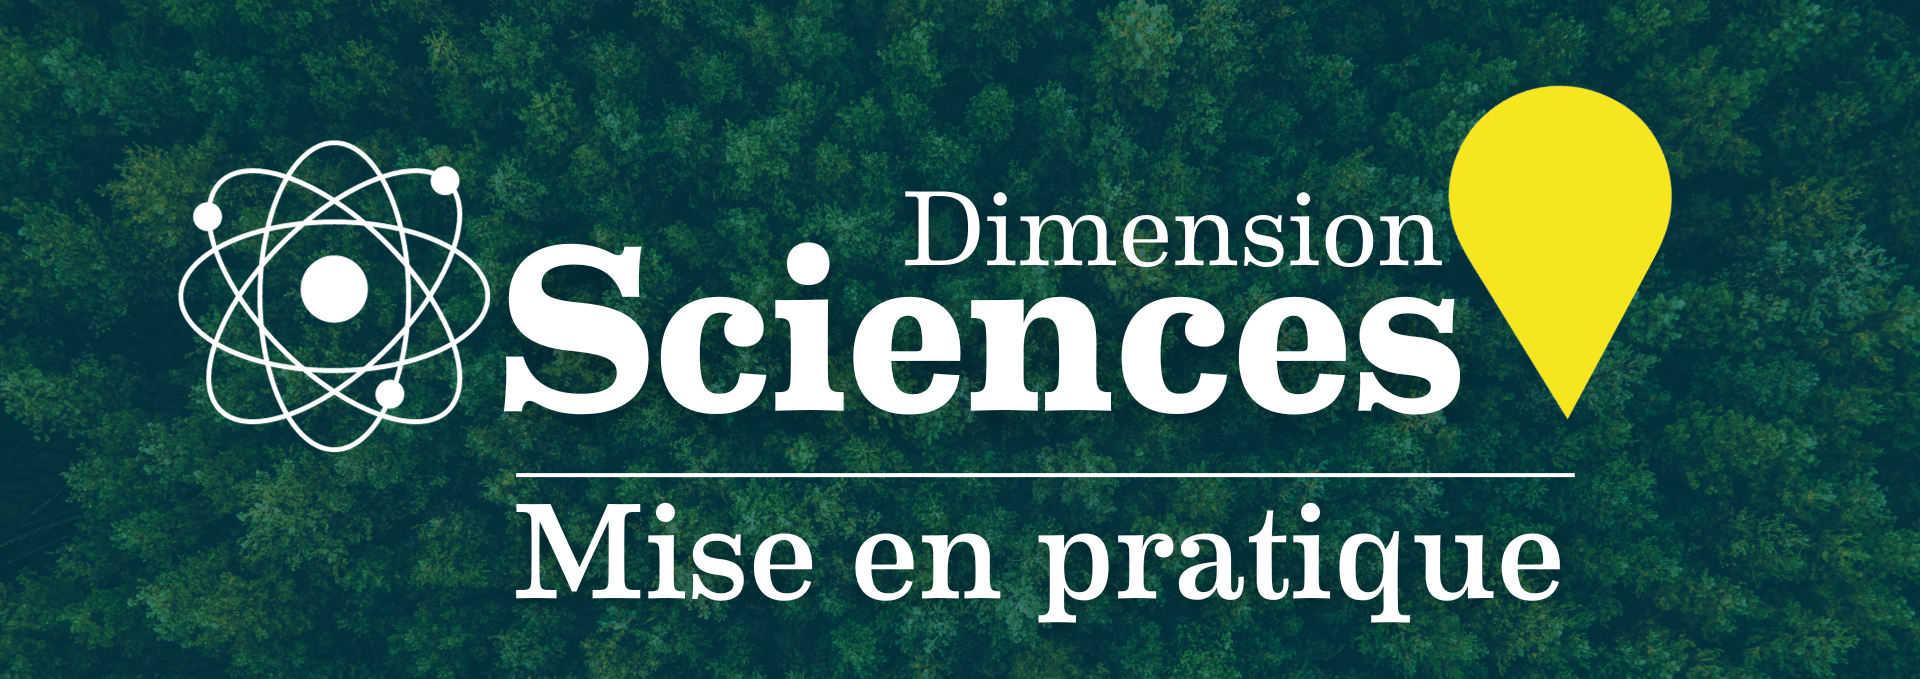 Dimension Sciences mise en pratique